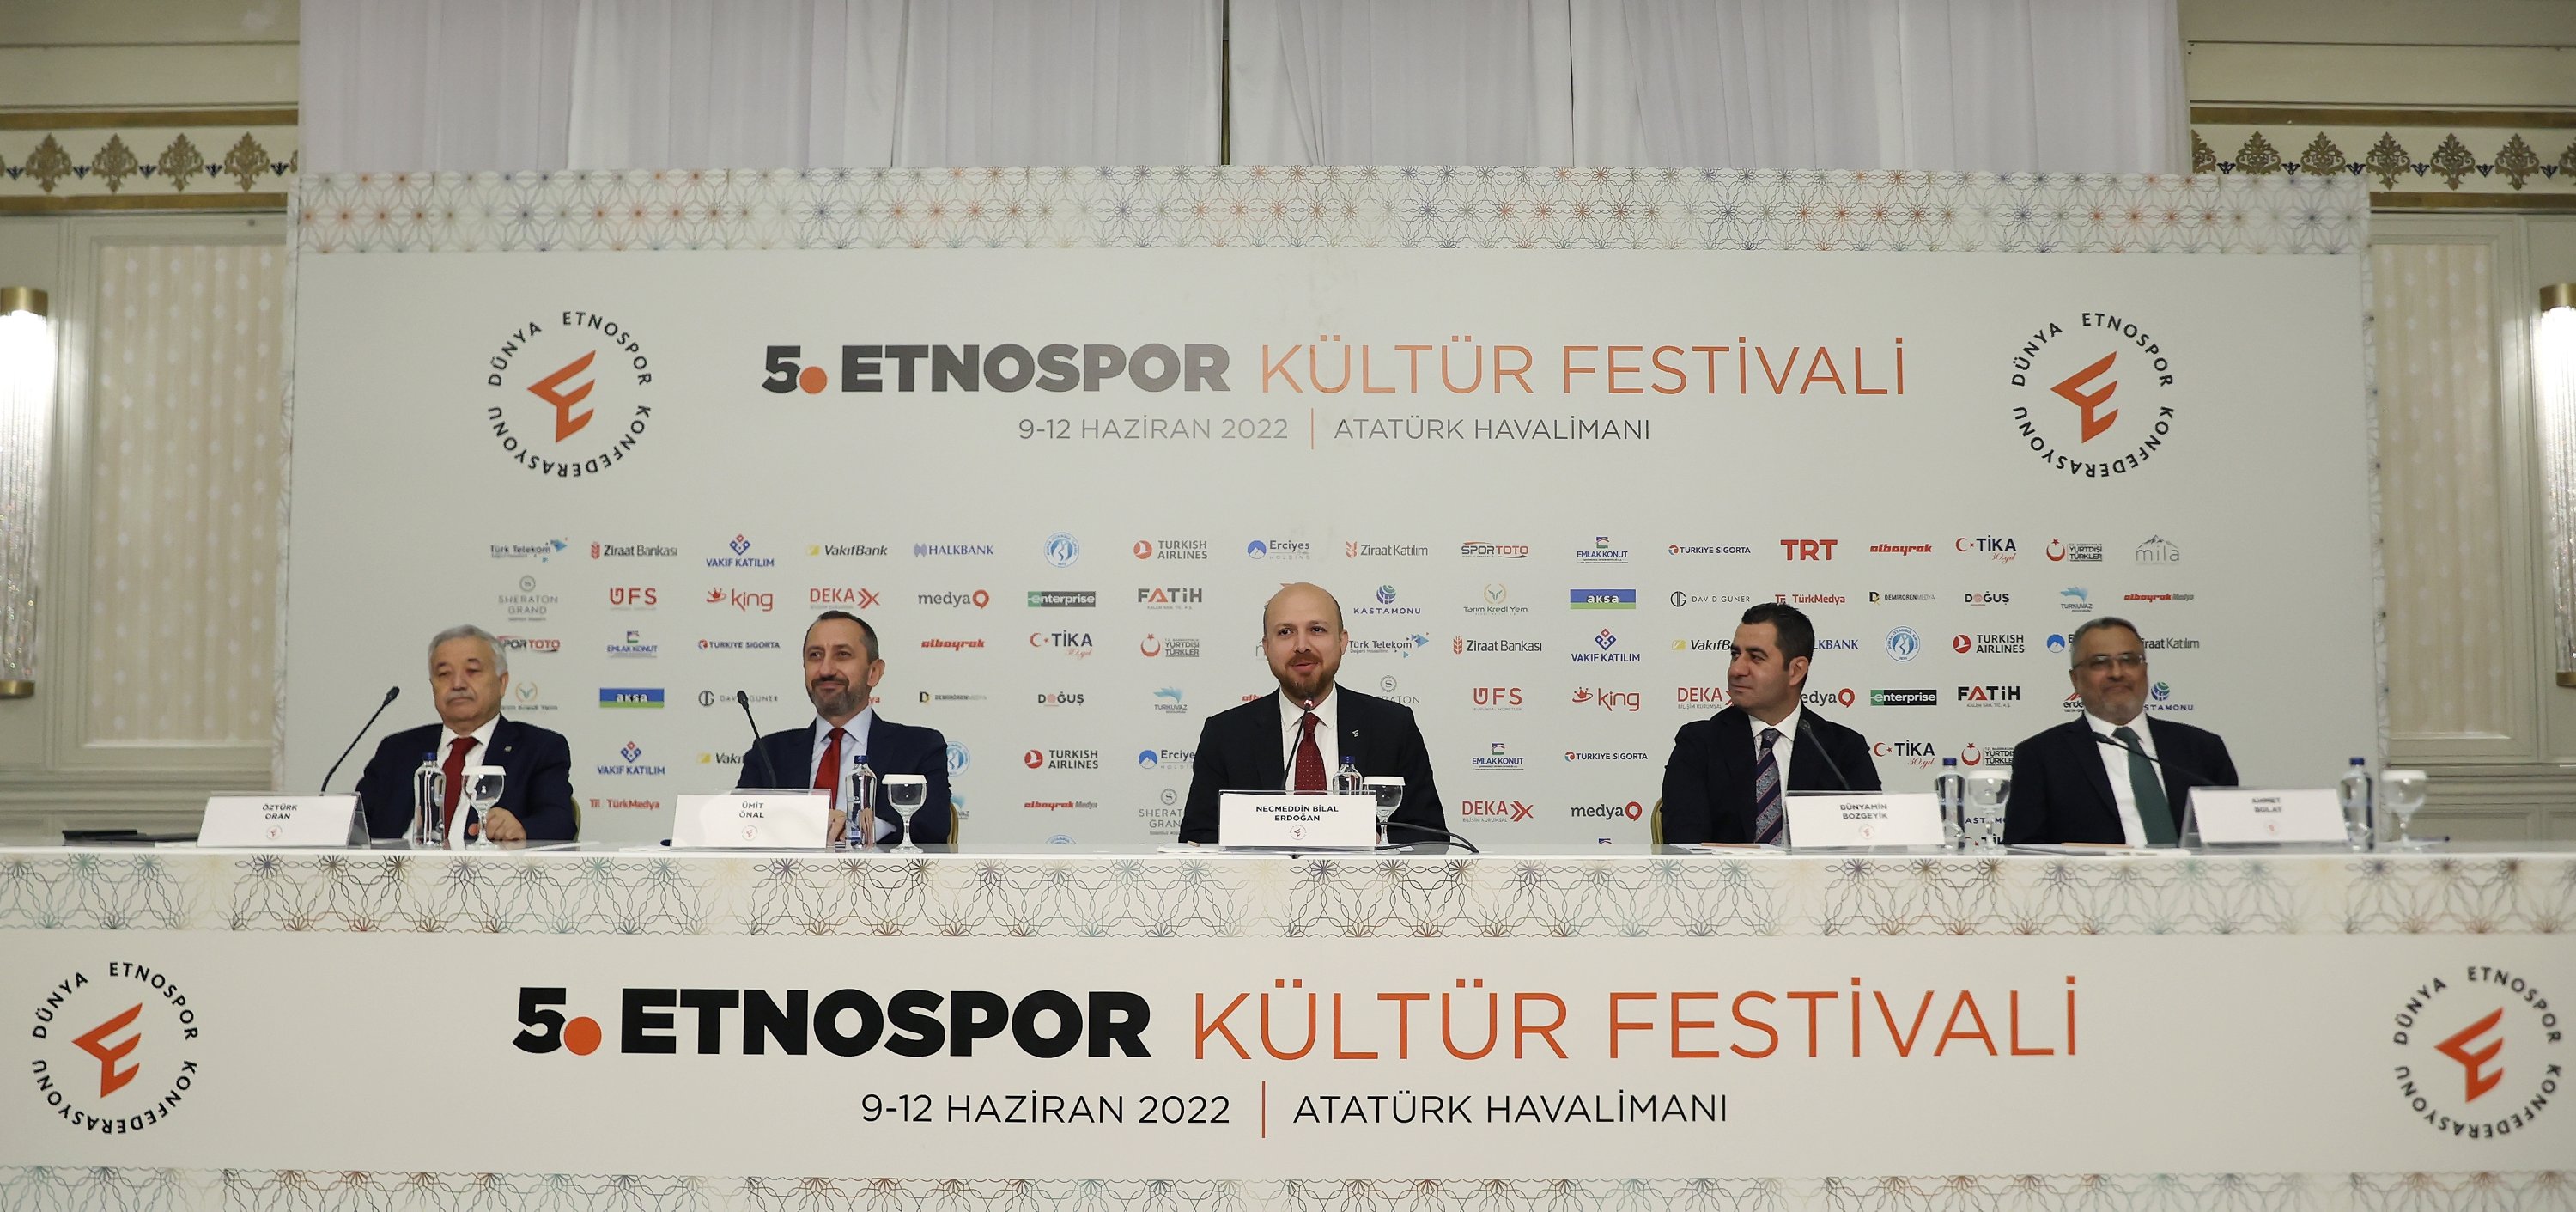 Presiden Konfederasi Etnosport Dunia Bilal Erdoğan (tengah) dan tamu lainnya menghadiri acara jumpa pers untuk Festival Budaya Ethnosports ke-5, Istanbul, Turki, 7 Juni 2022.